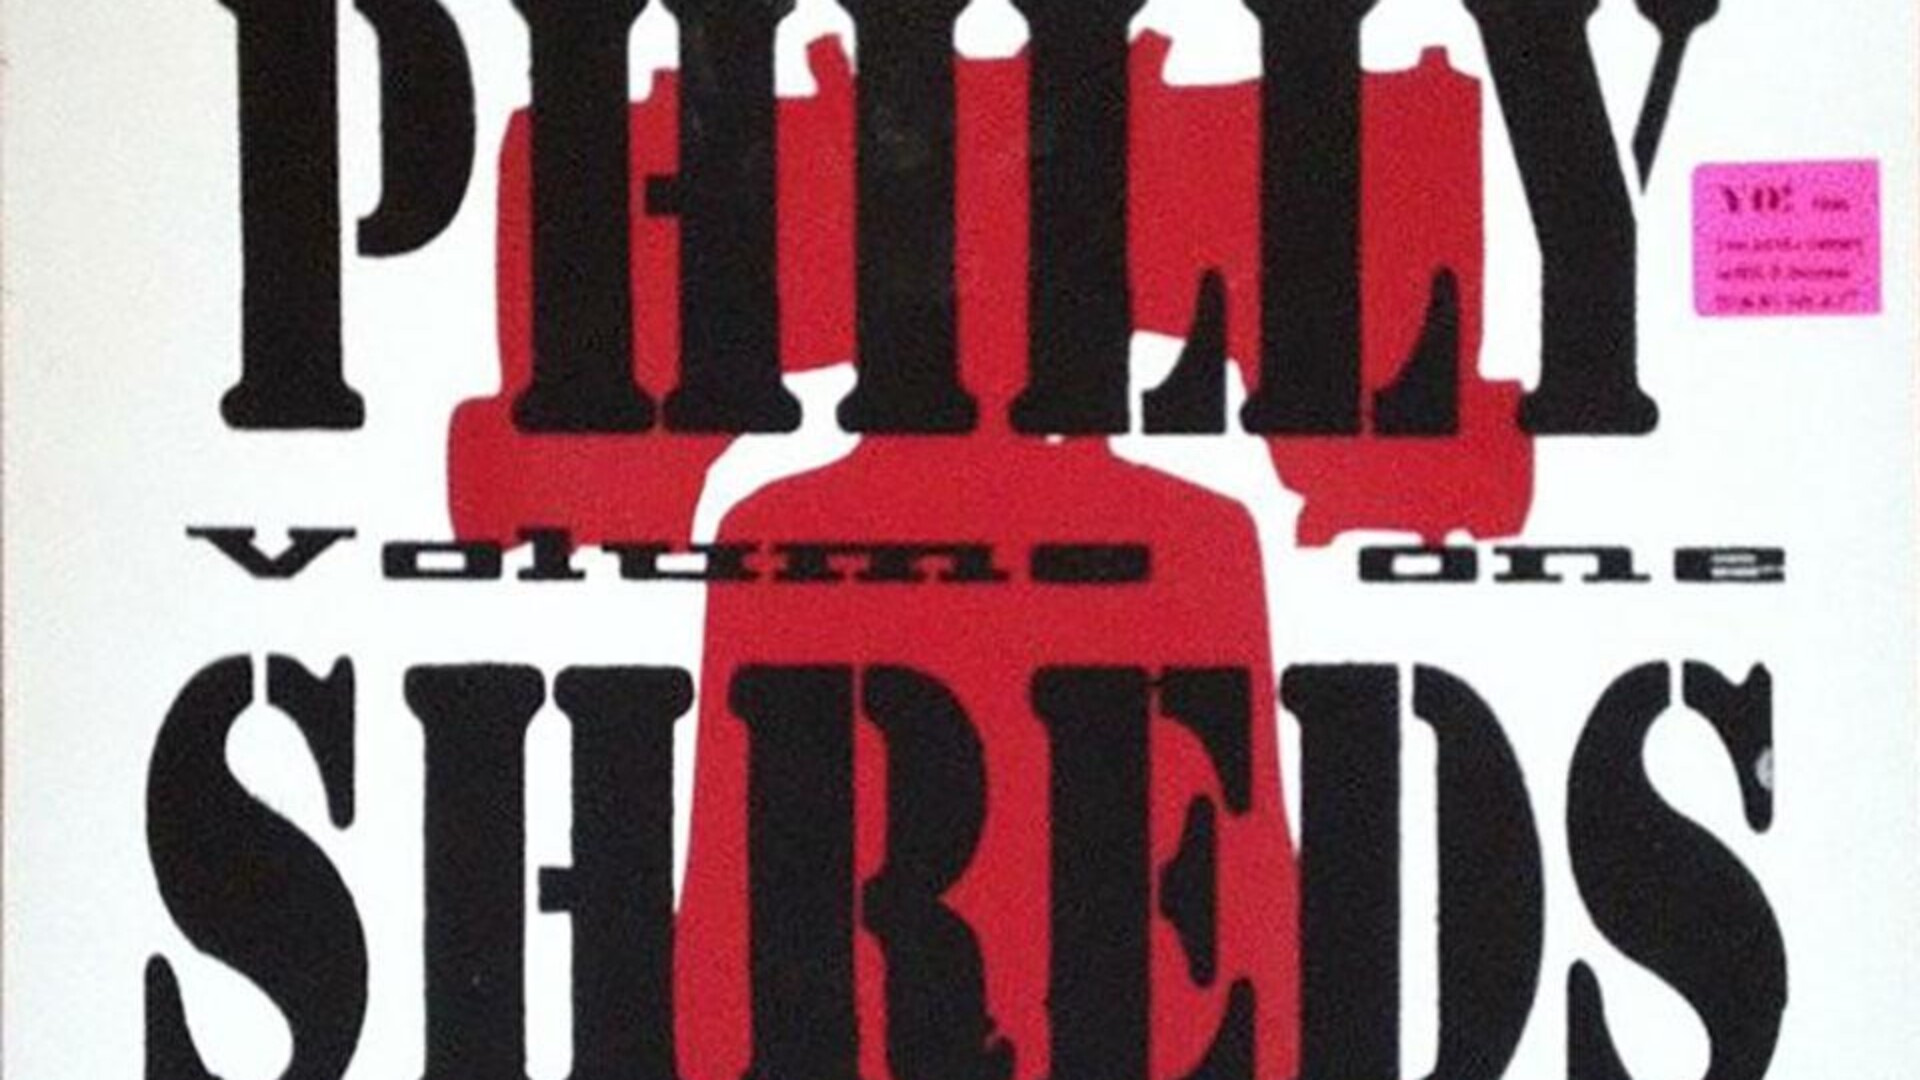 Philly Shreds Volumen One